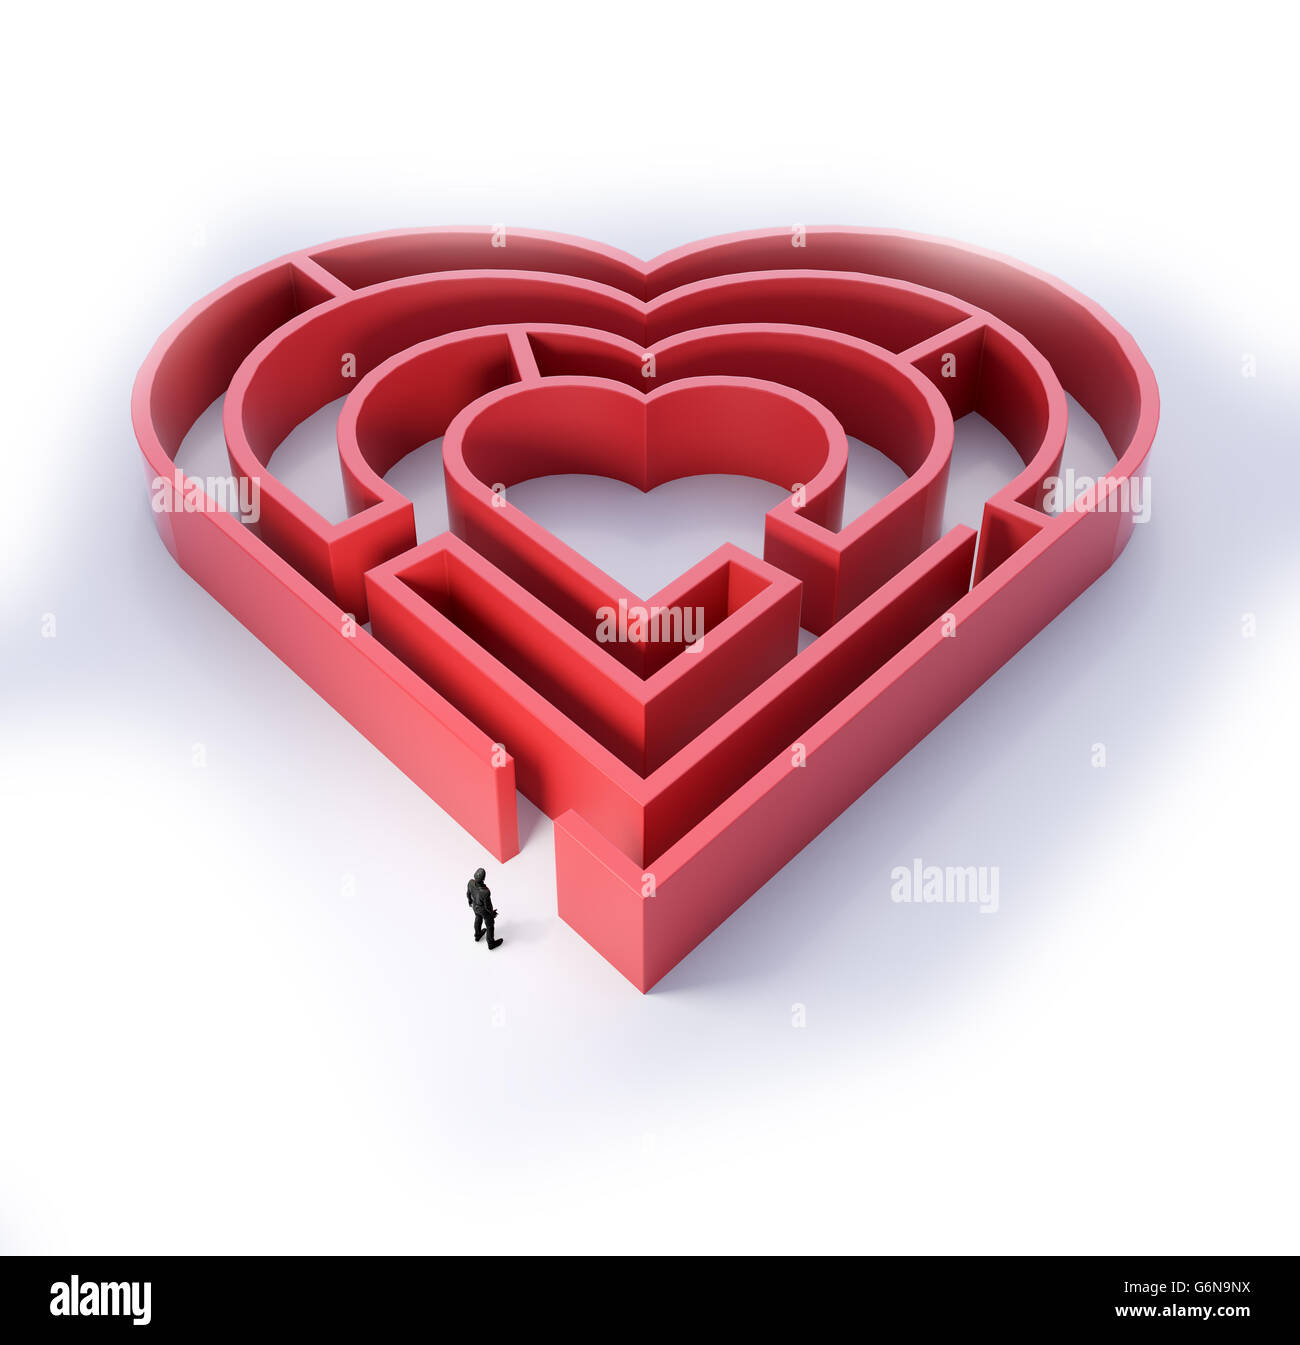 Herzförmige Labyrinth - Liebe und Beziehung Konzept 3D Illustration Stockfoto